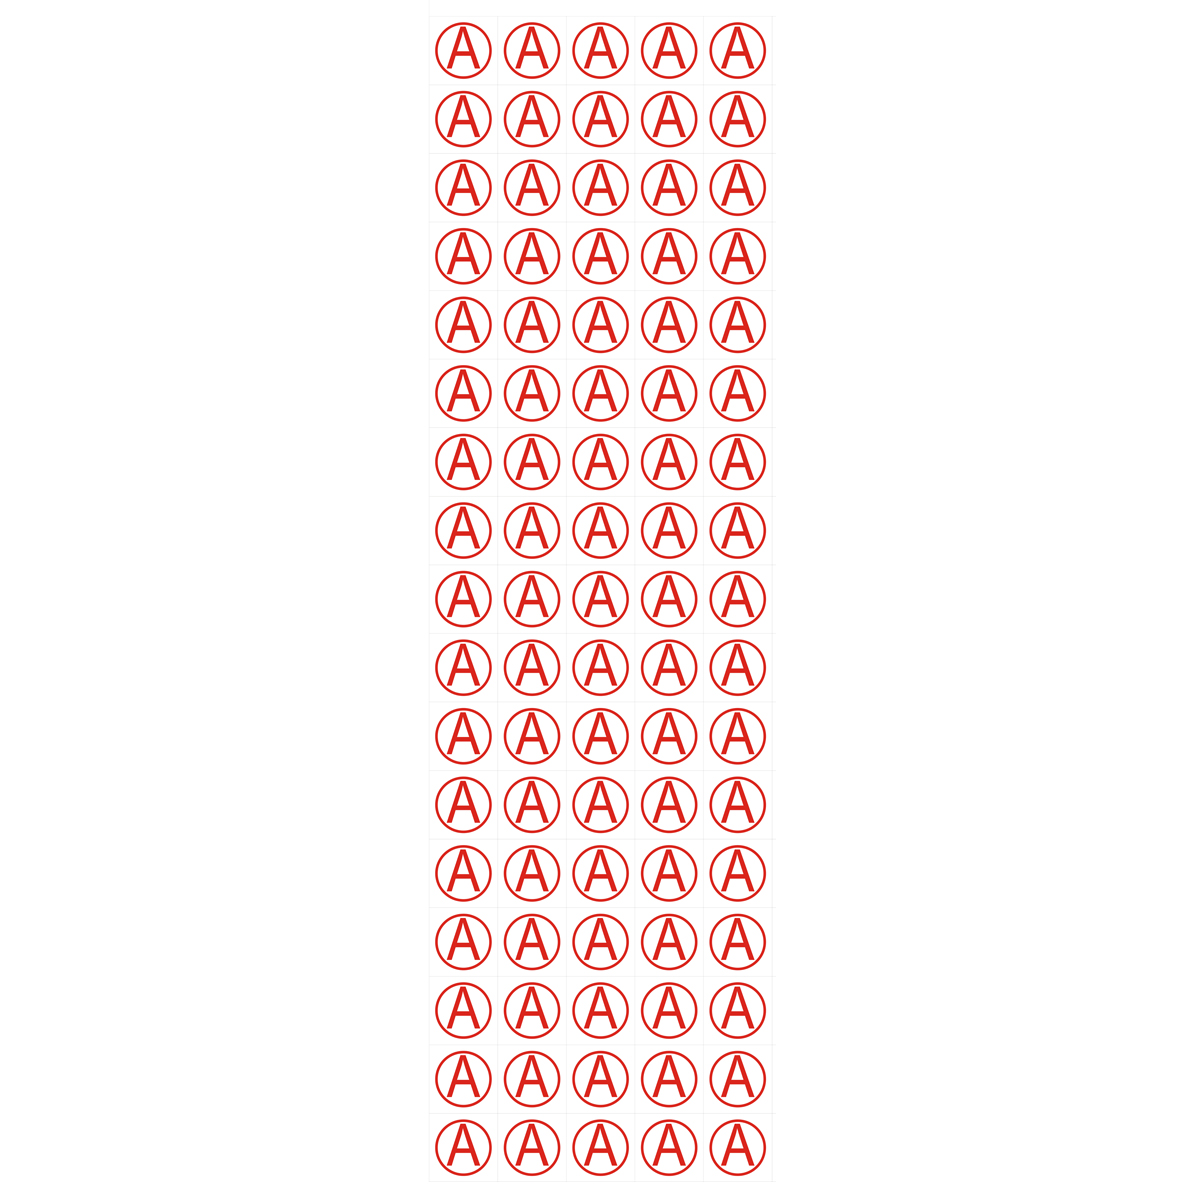 Знак "А" для идентификации аварийных светильников (Пленка 40 х 40) - комплект из 85 штук